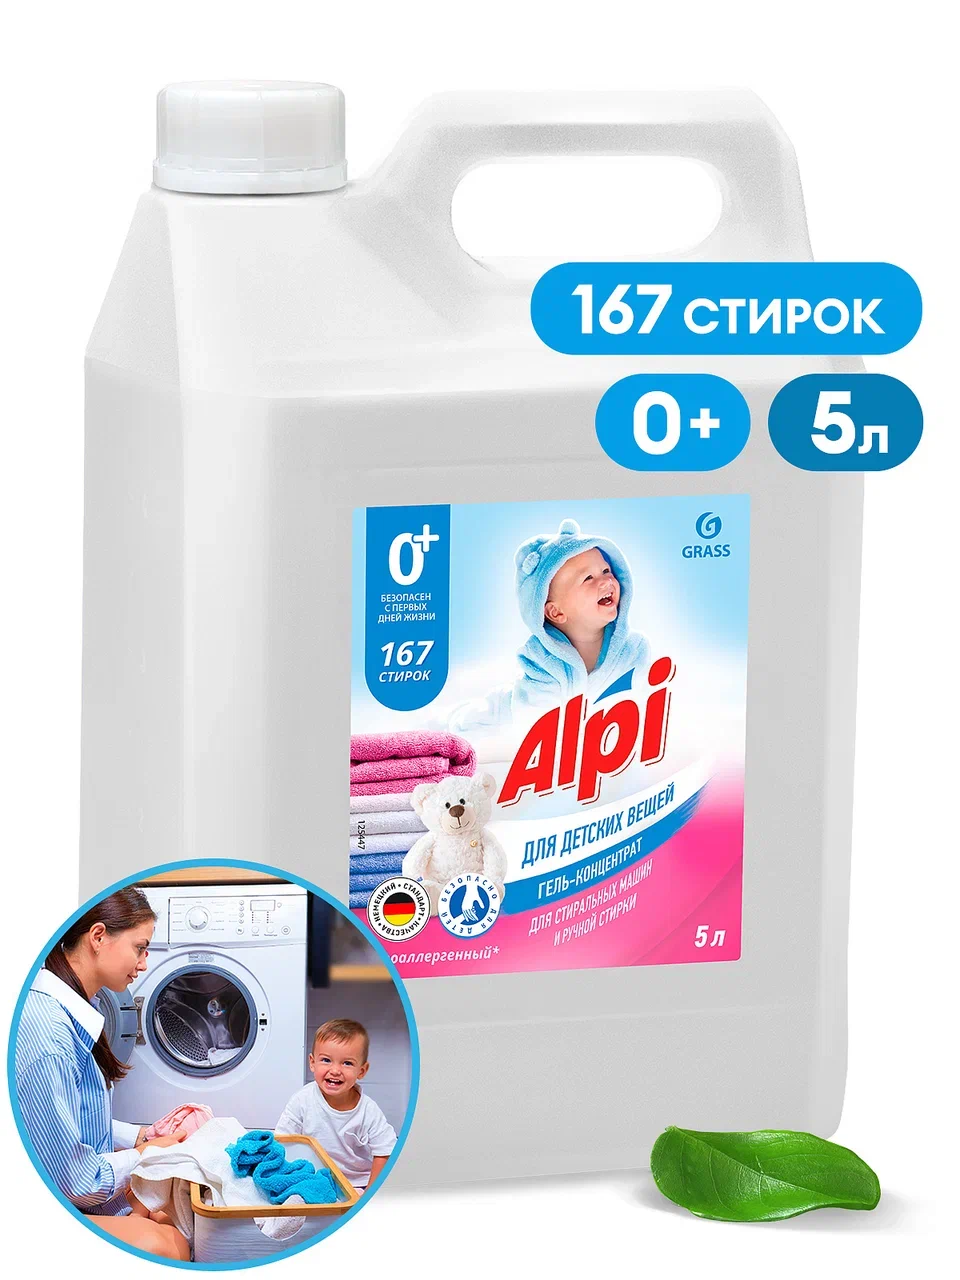 Гель-концентрат для детских вещей «Alpi sensetive gel», 5 кг